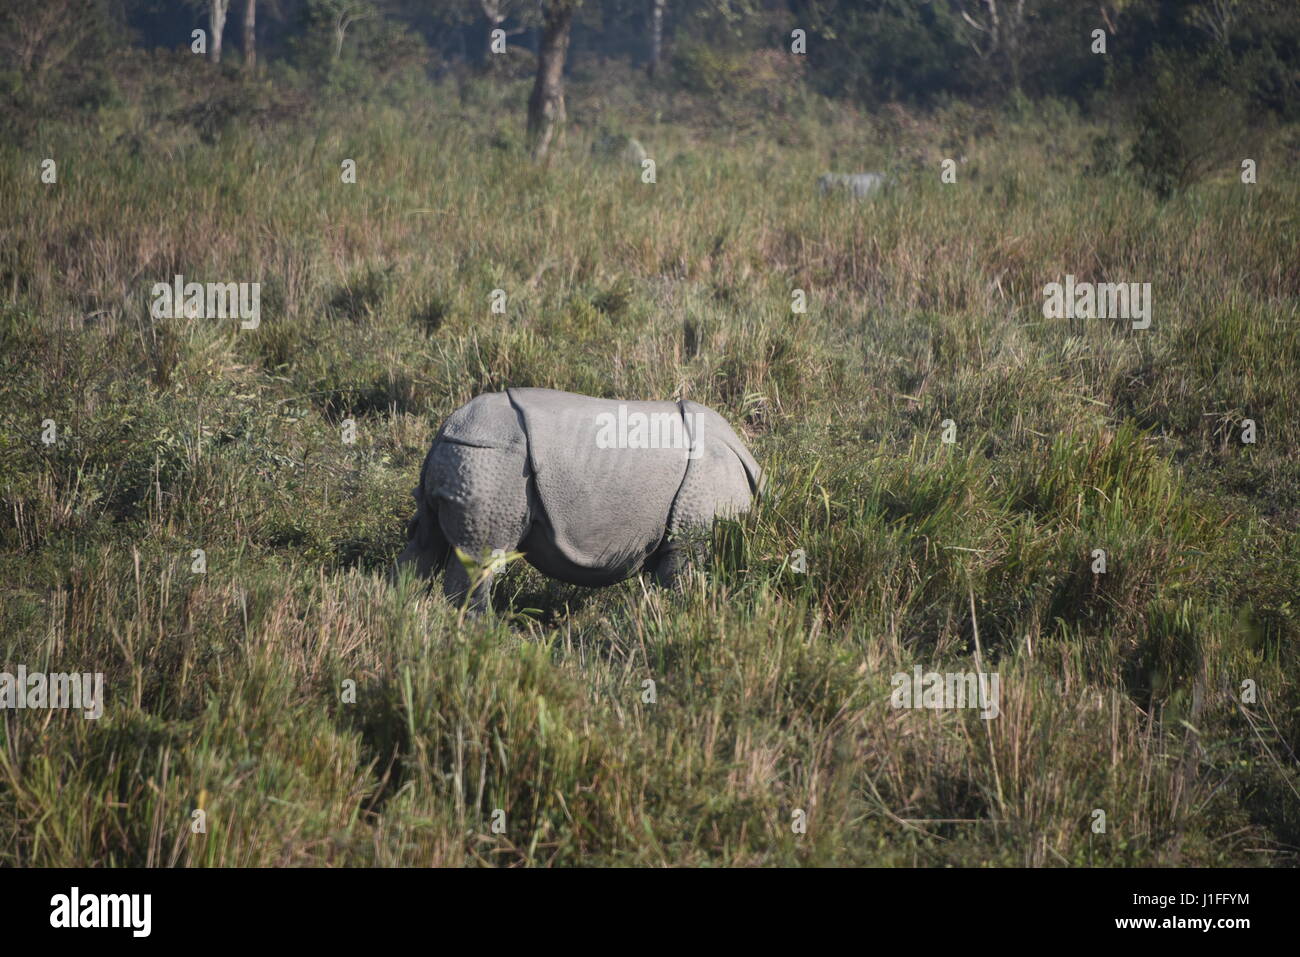 Tres rinoceronte indio en Kaziranga national parl, india. El Parque Nacional Kaziranga tiene tres cuernos hieghest número de rinocerontes en el mundo Foto de stock